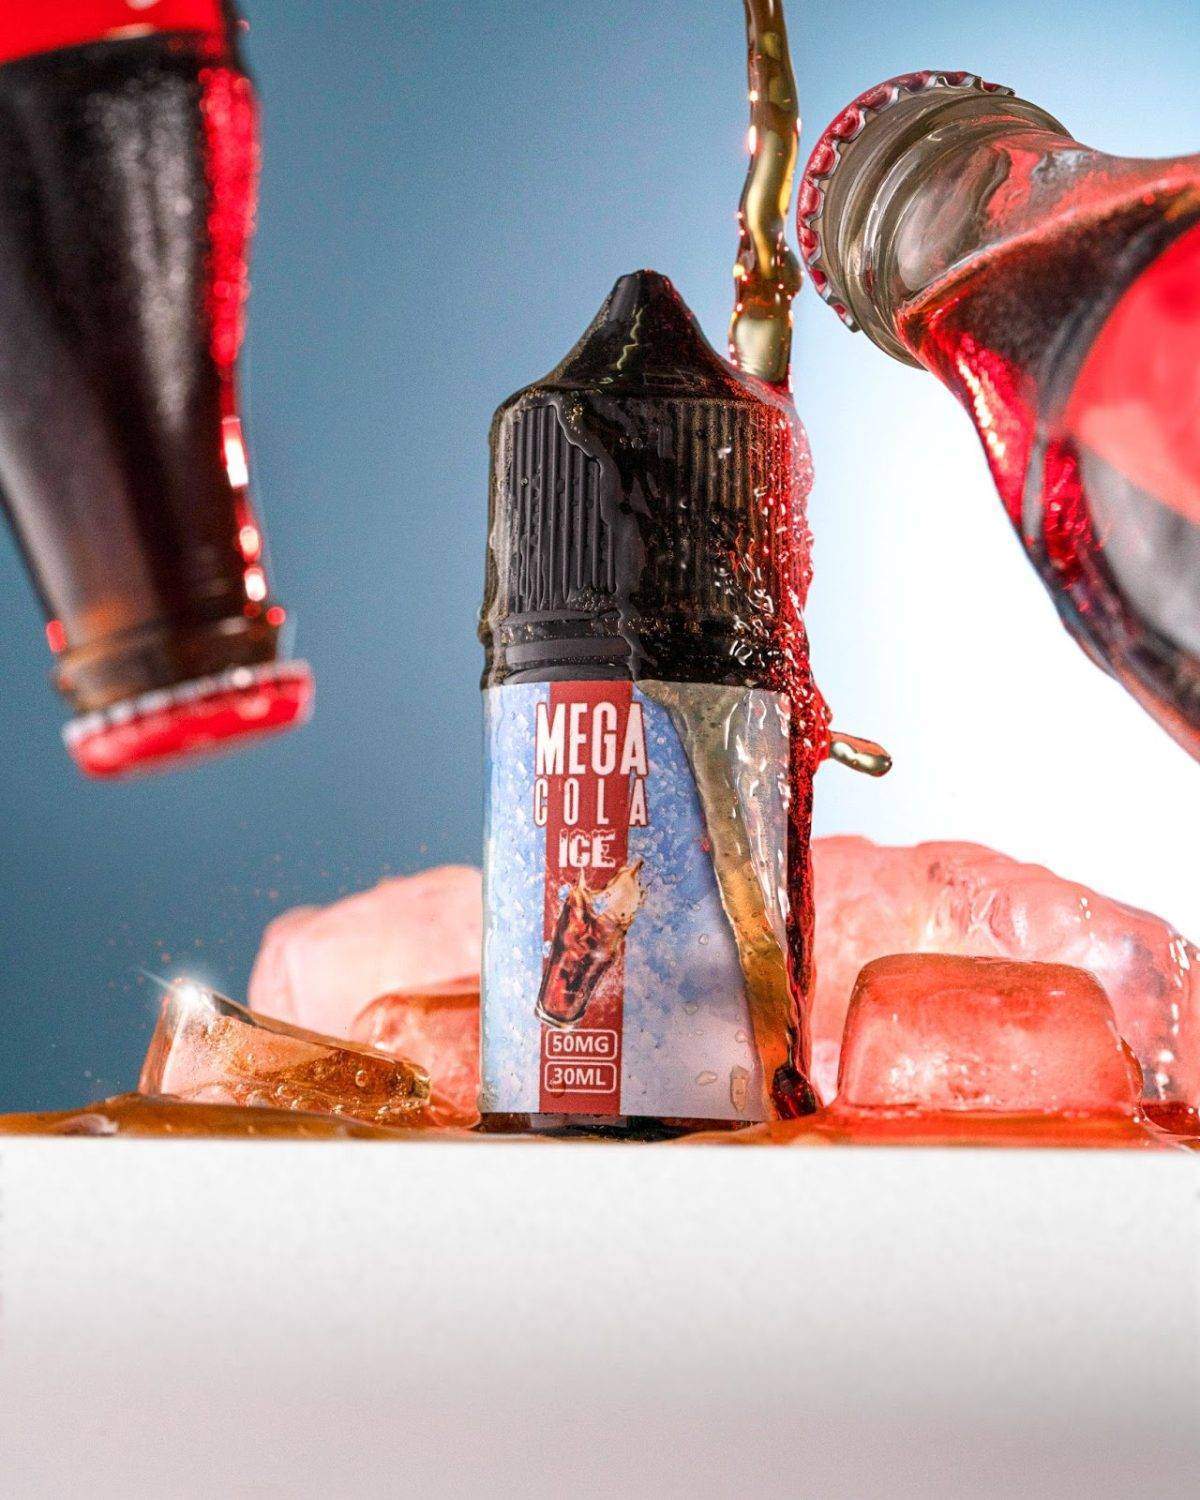 Mega Cola Ice Saltnic